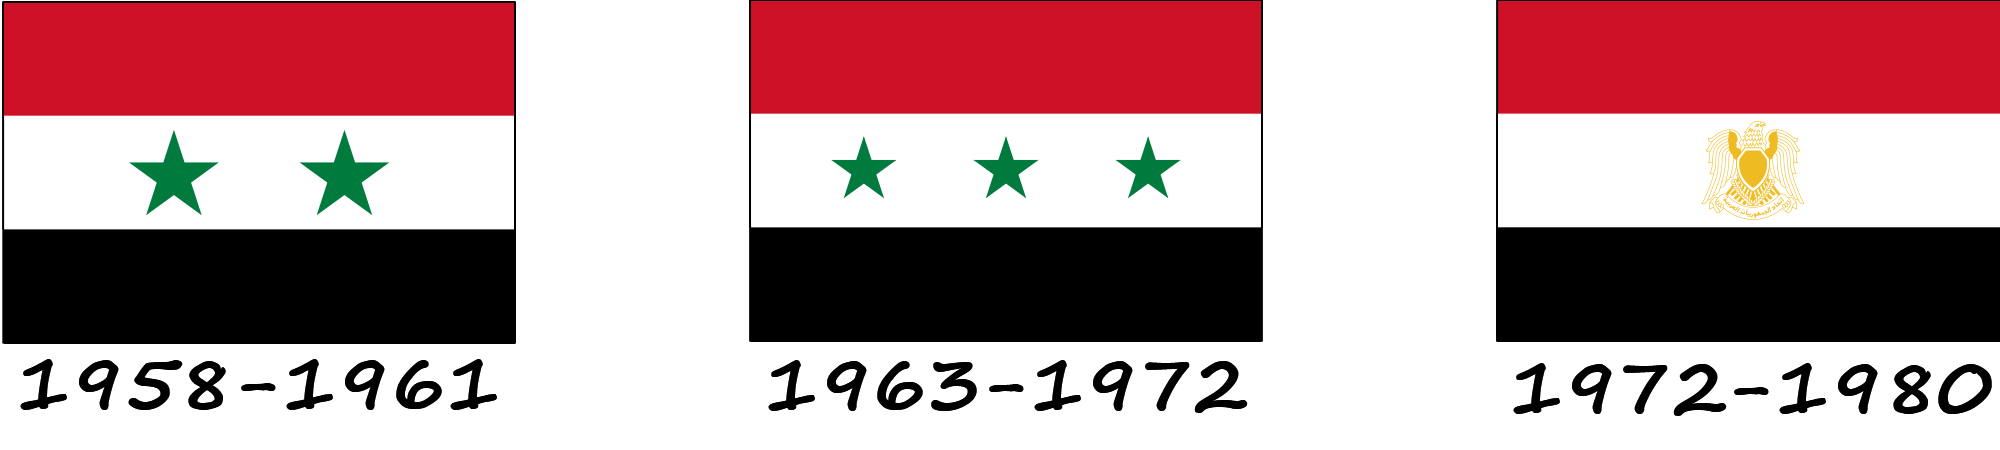 Історія прапору Сирії. Як змінювався прапор Сирії?